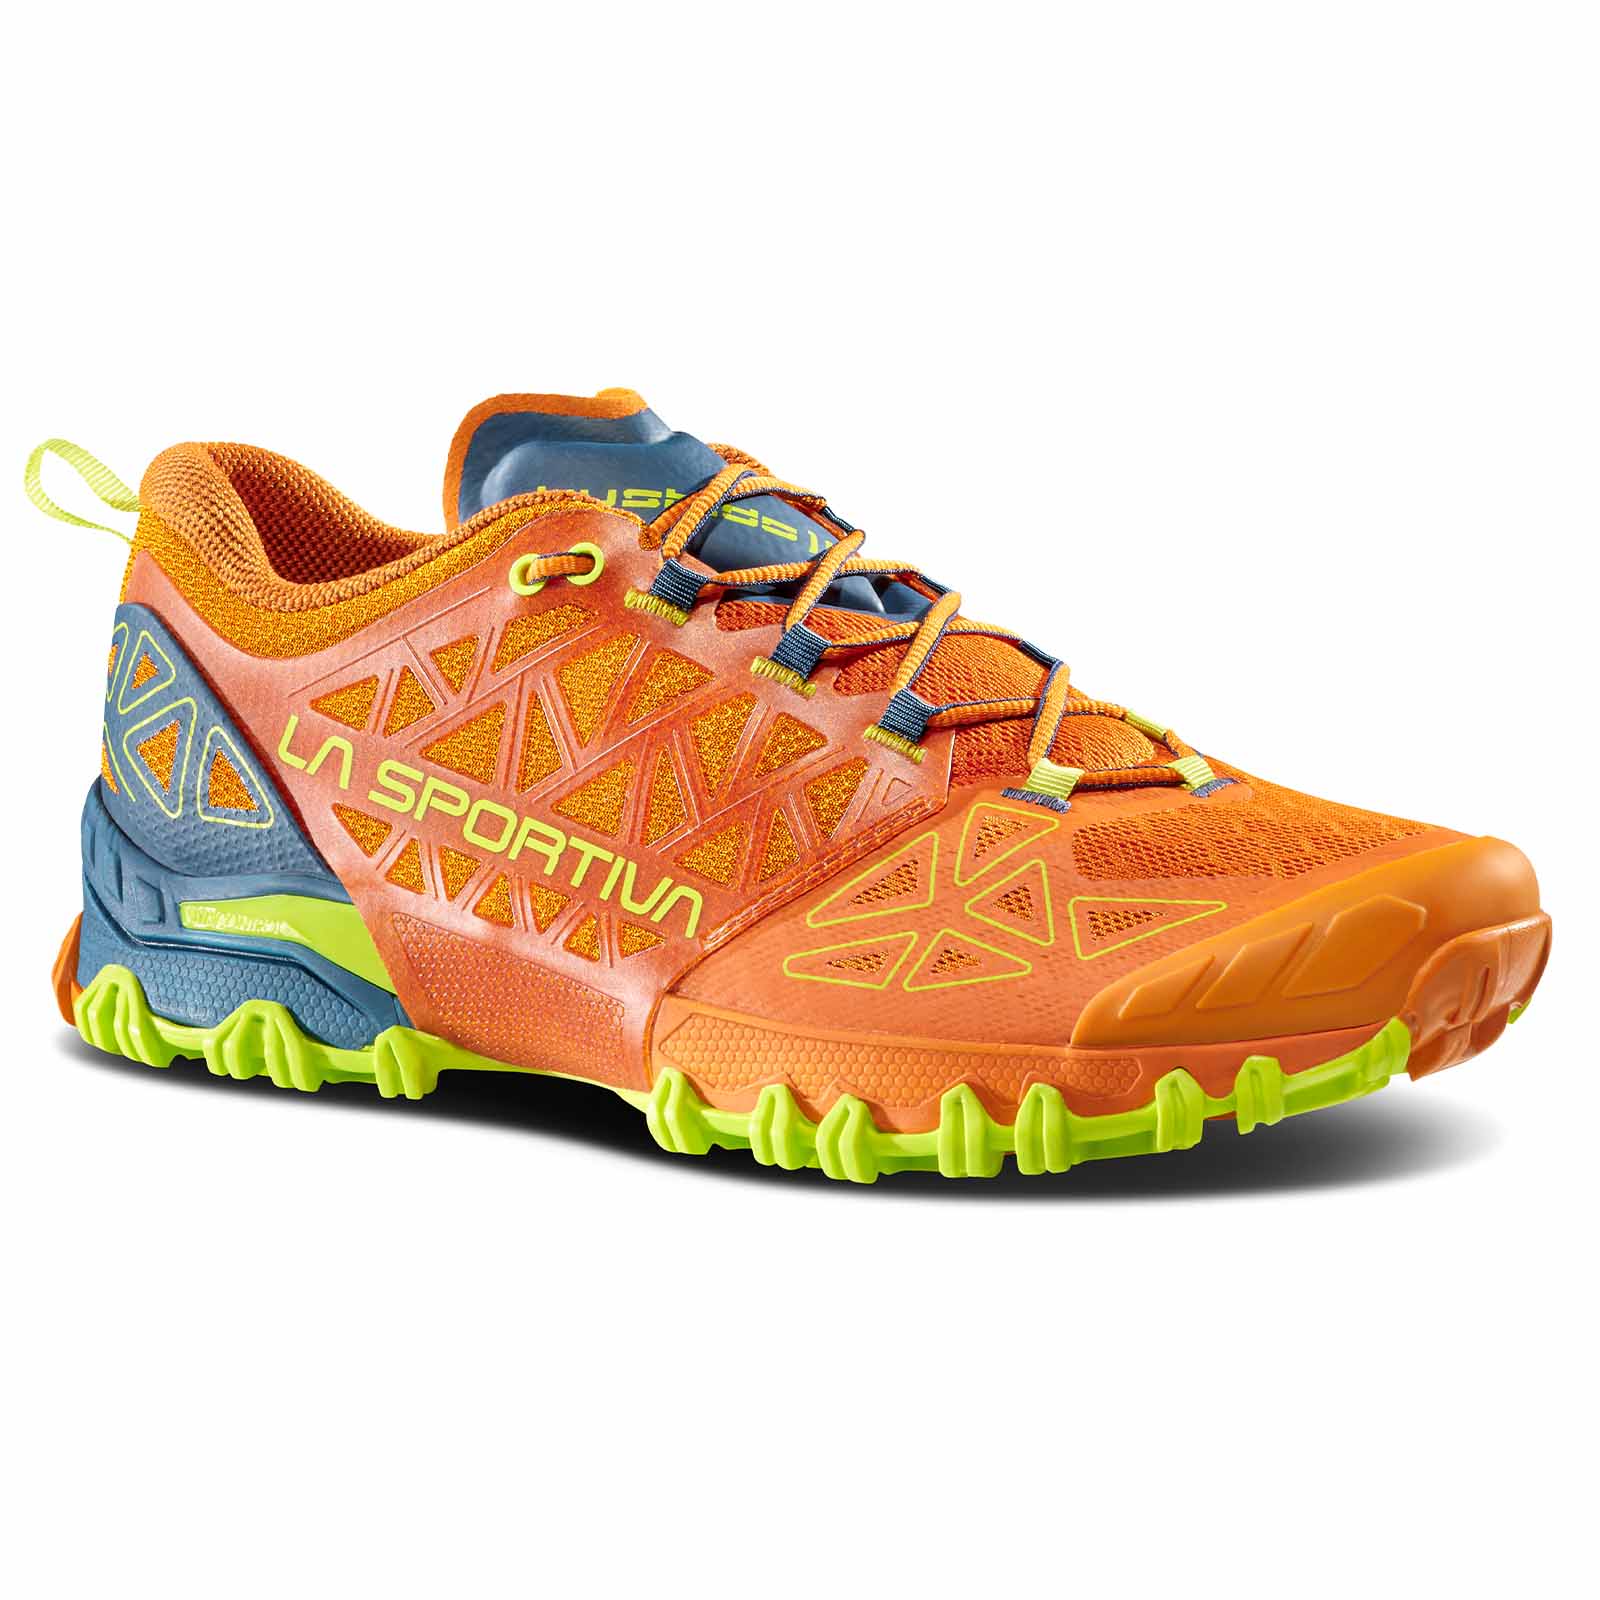 La Sportiva Bushido II Herren Trailrunning Schuhe orange